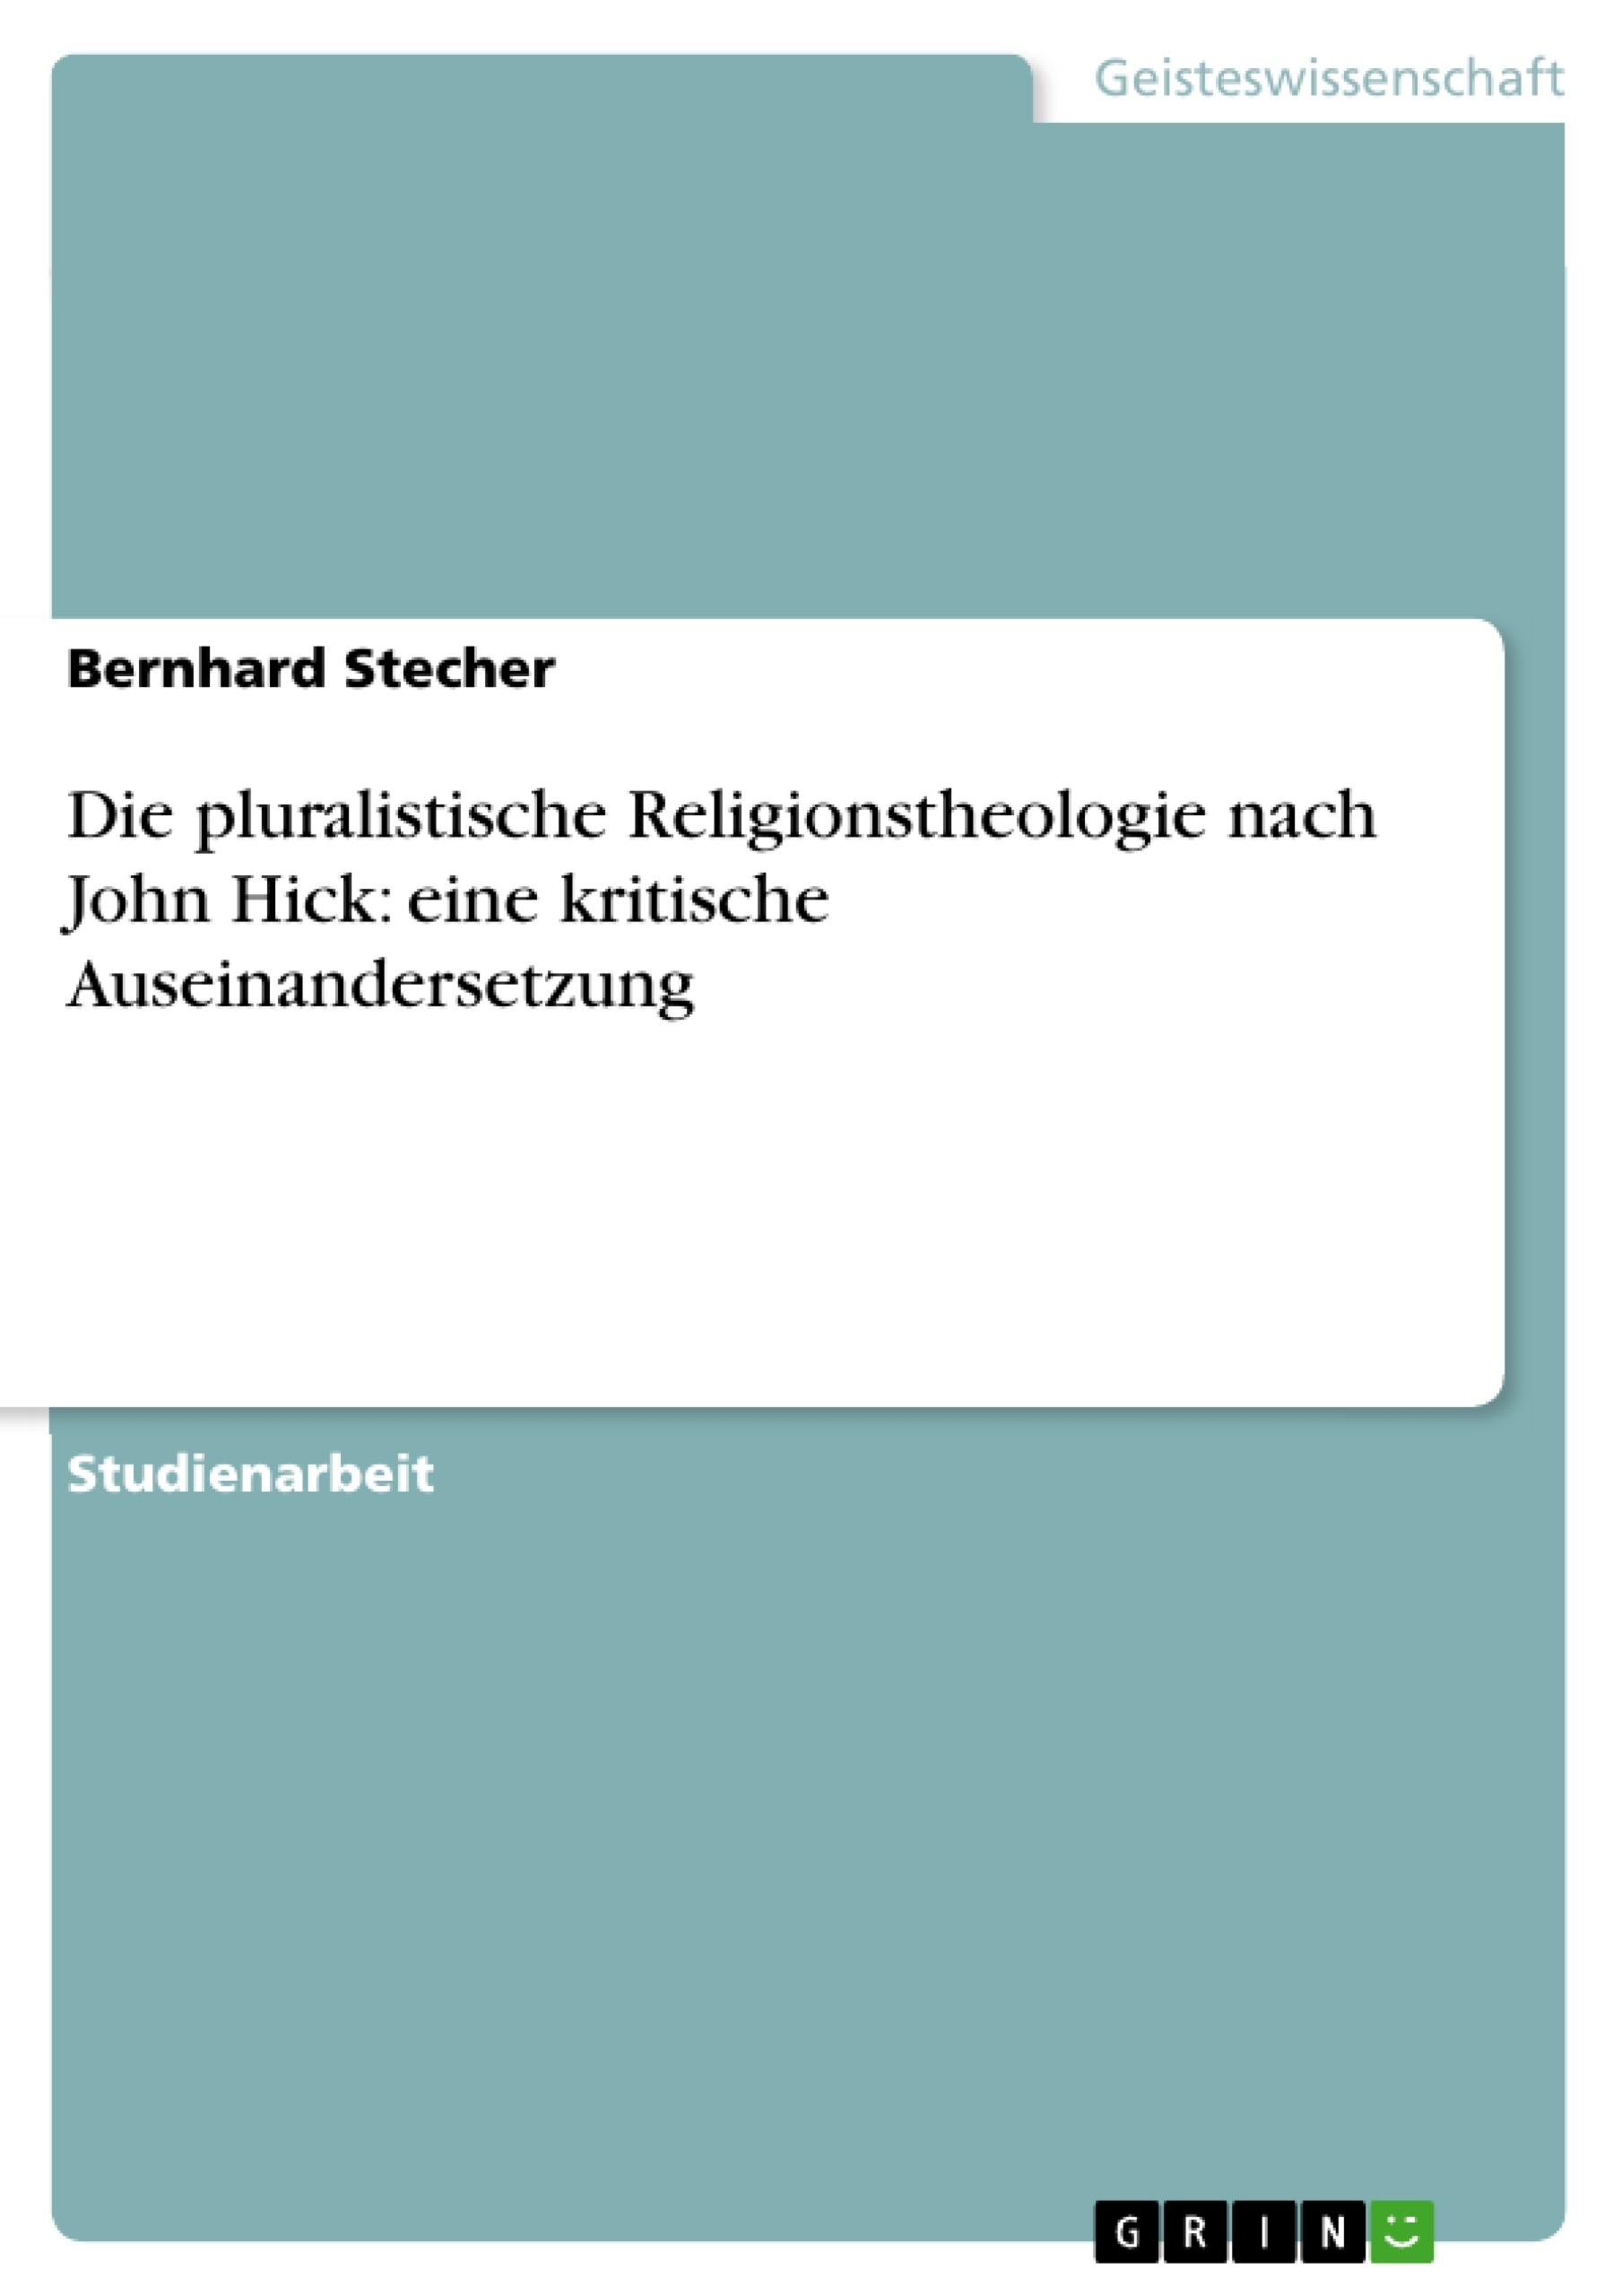 Title: Die pluralistische Religionstheologie nach John Hick: eine kritische Auseinandersetzung